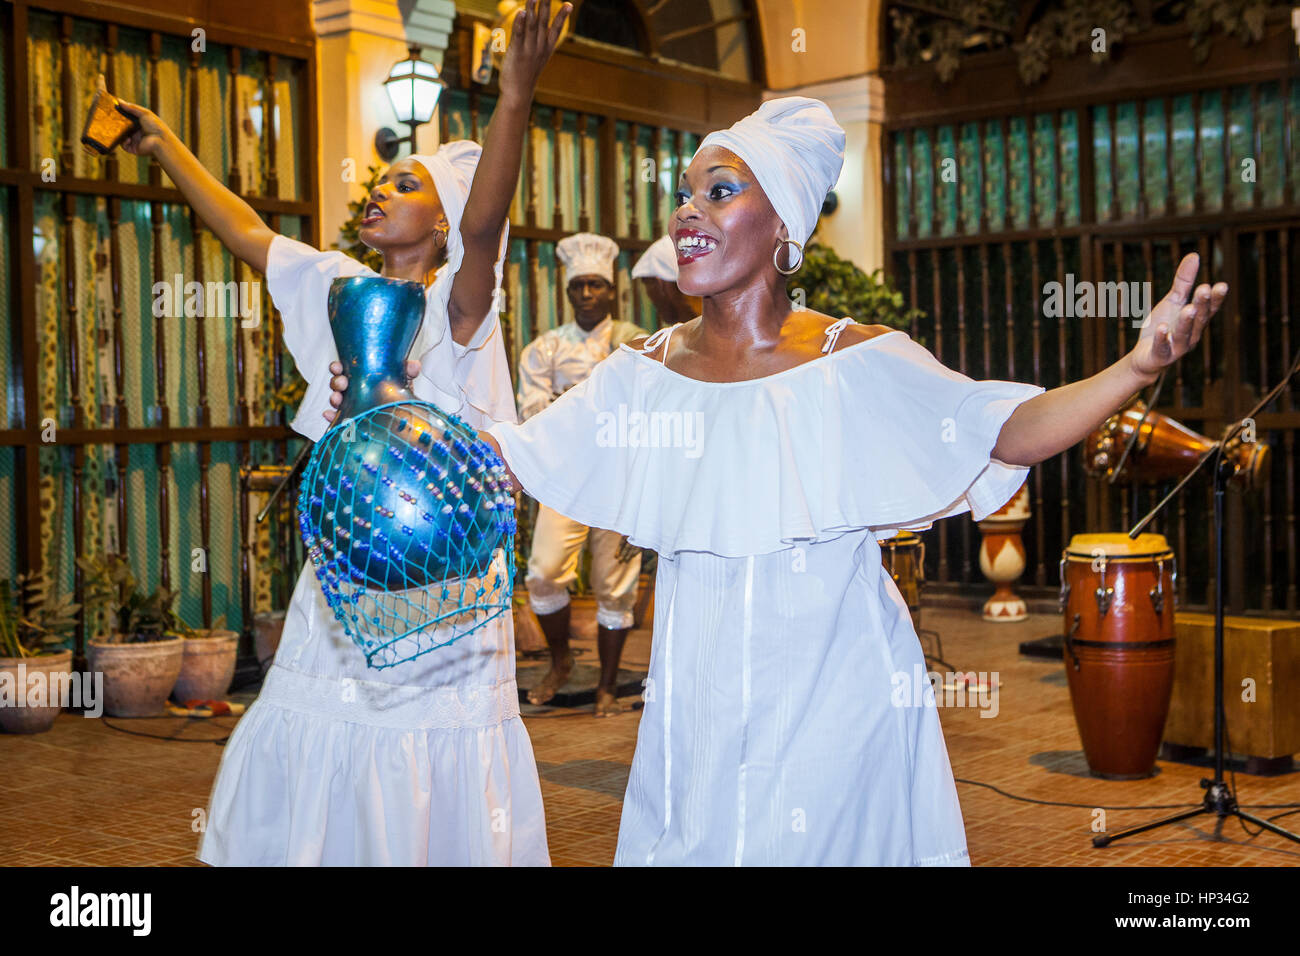 Danse de la danse religieuse yoruba, traditionnelle, typique, classique, en association culturelle yoruba, dans la Vieille Havane, Habana Vieja, la Habana, Cuba Banque D'Images